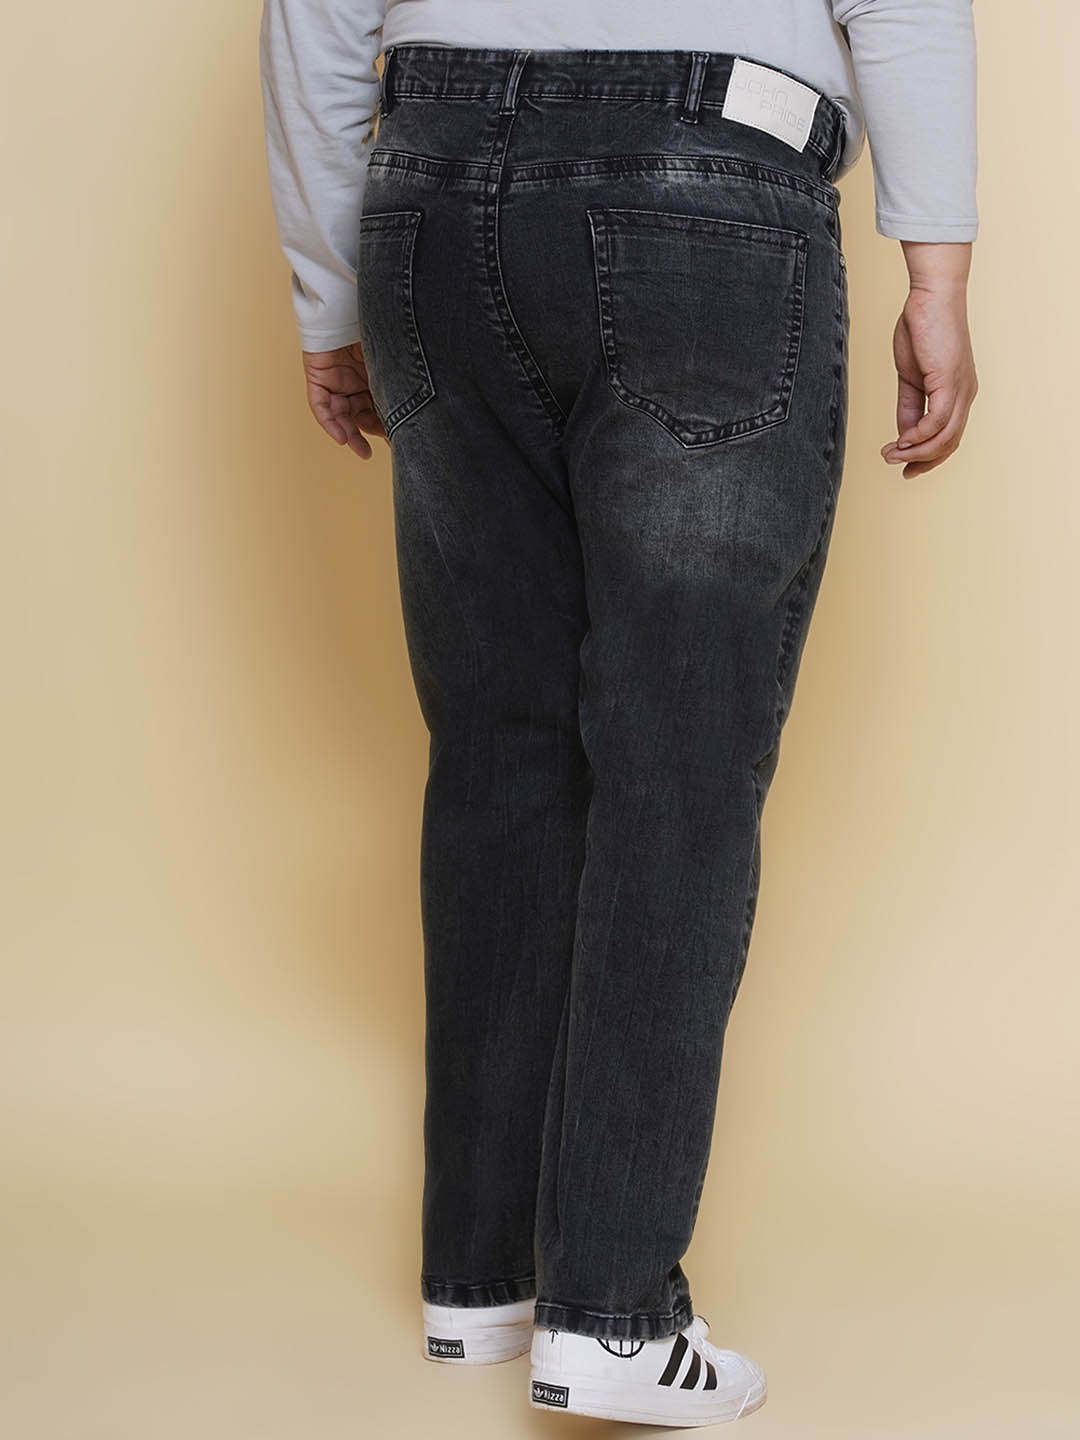 bottomwear/jeans/PJPJ6092/pjpj6092-4.jpg